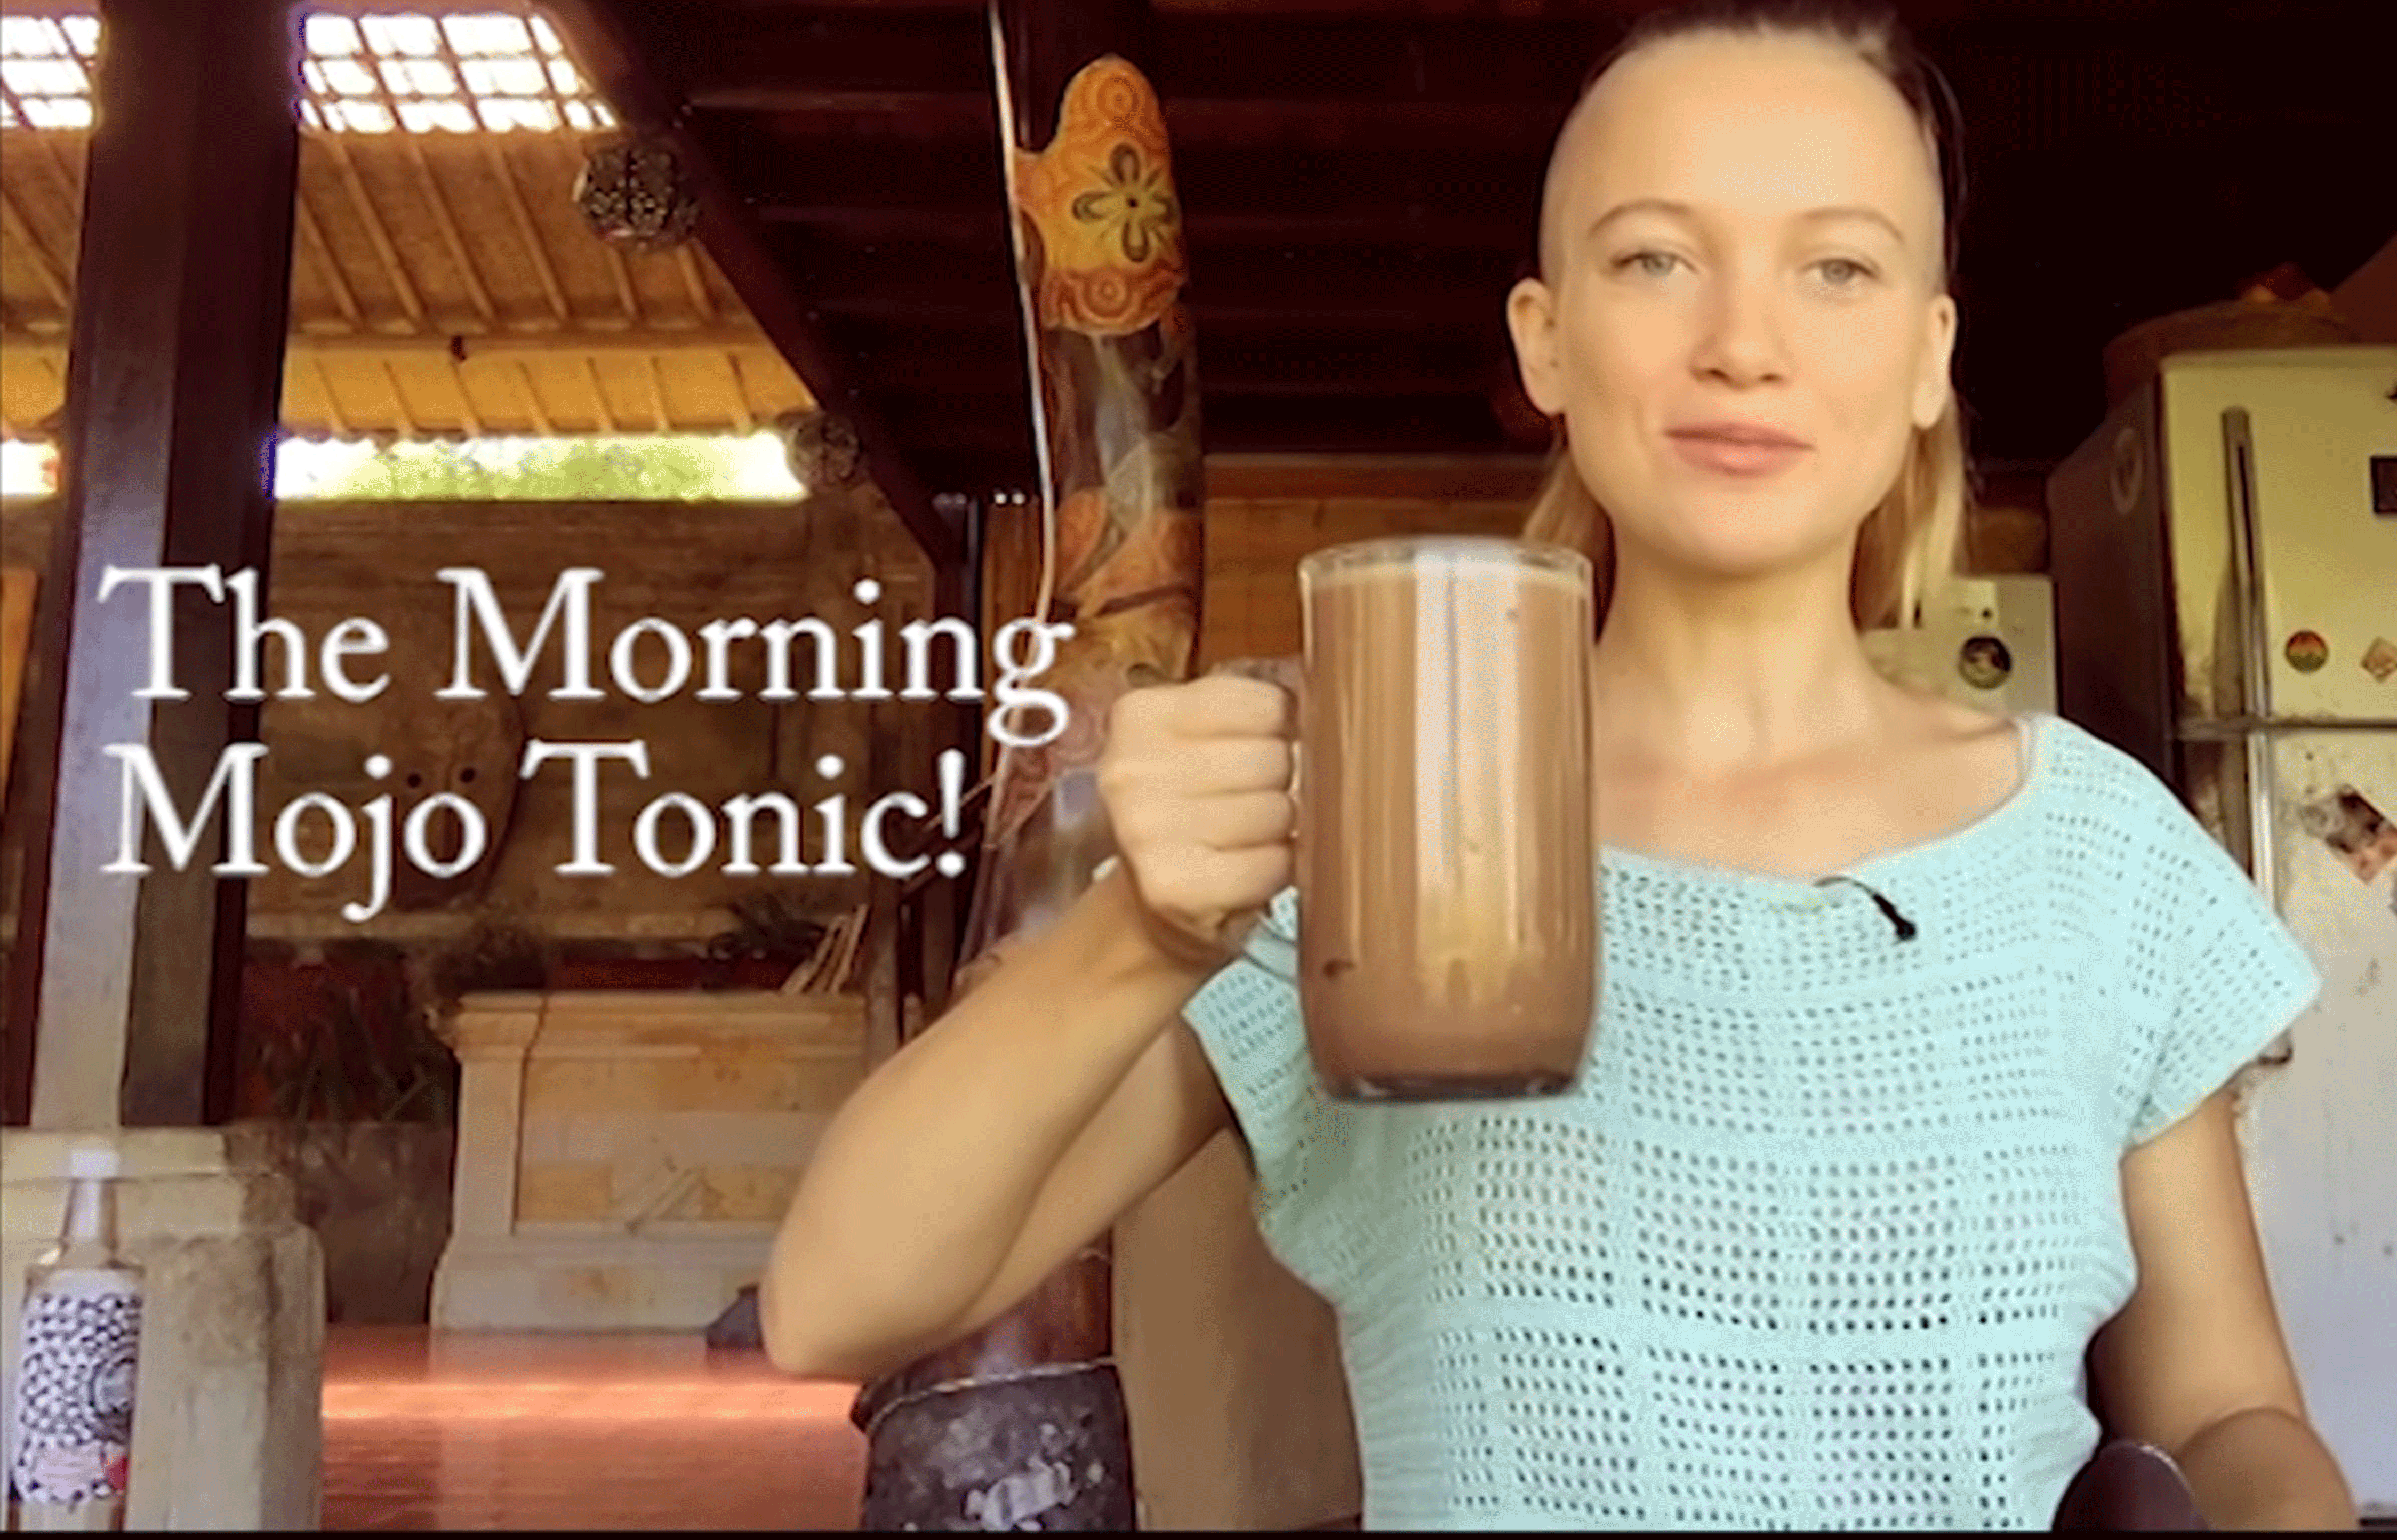 The ‘Morning Mojo’ Cacao Tonic!